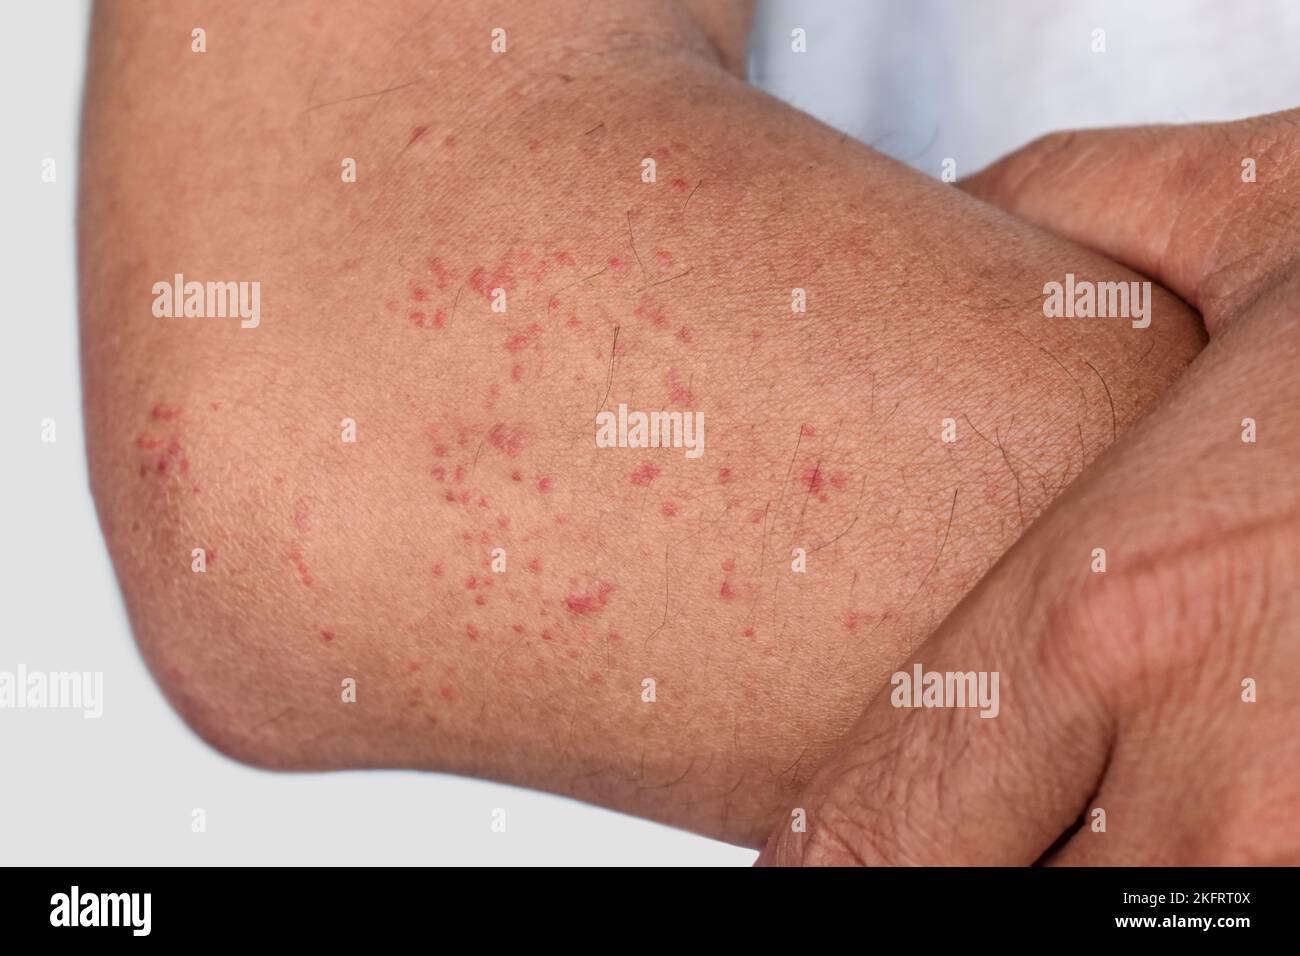 zanzara multipla itchy o insetto morso di grani; macchie rosse sull'avambraccio del sud-est asiatico, uomo adulto cinese. Foto Stock